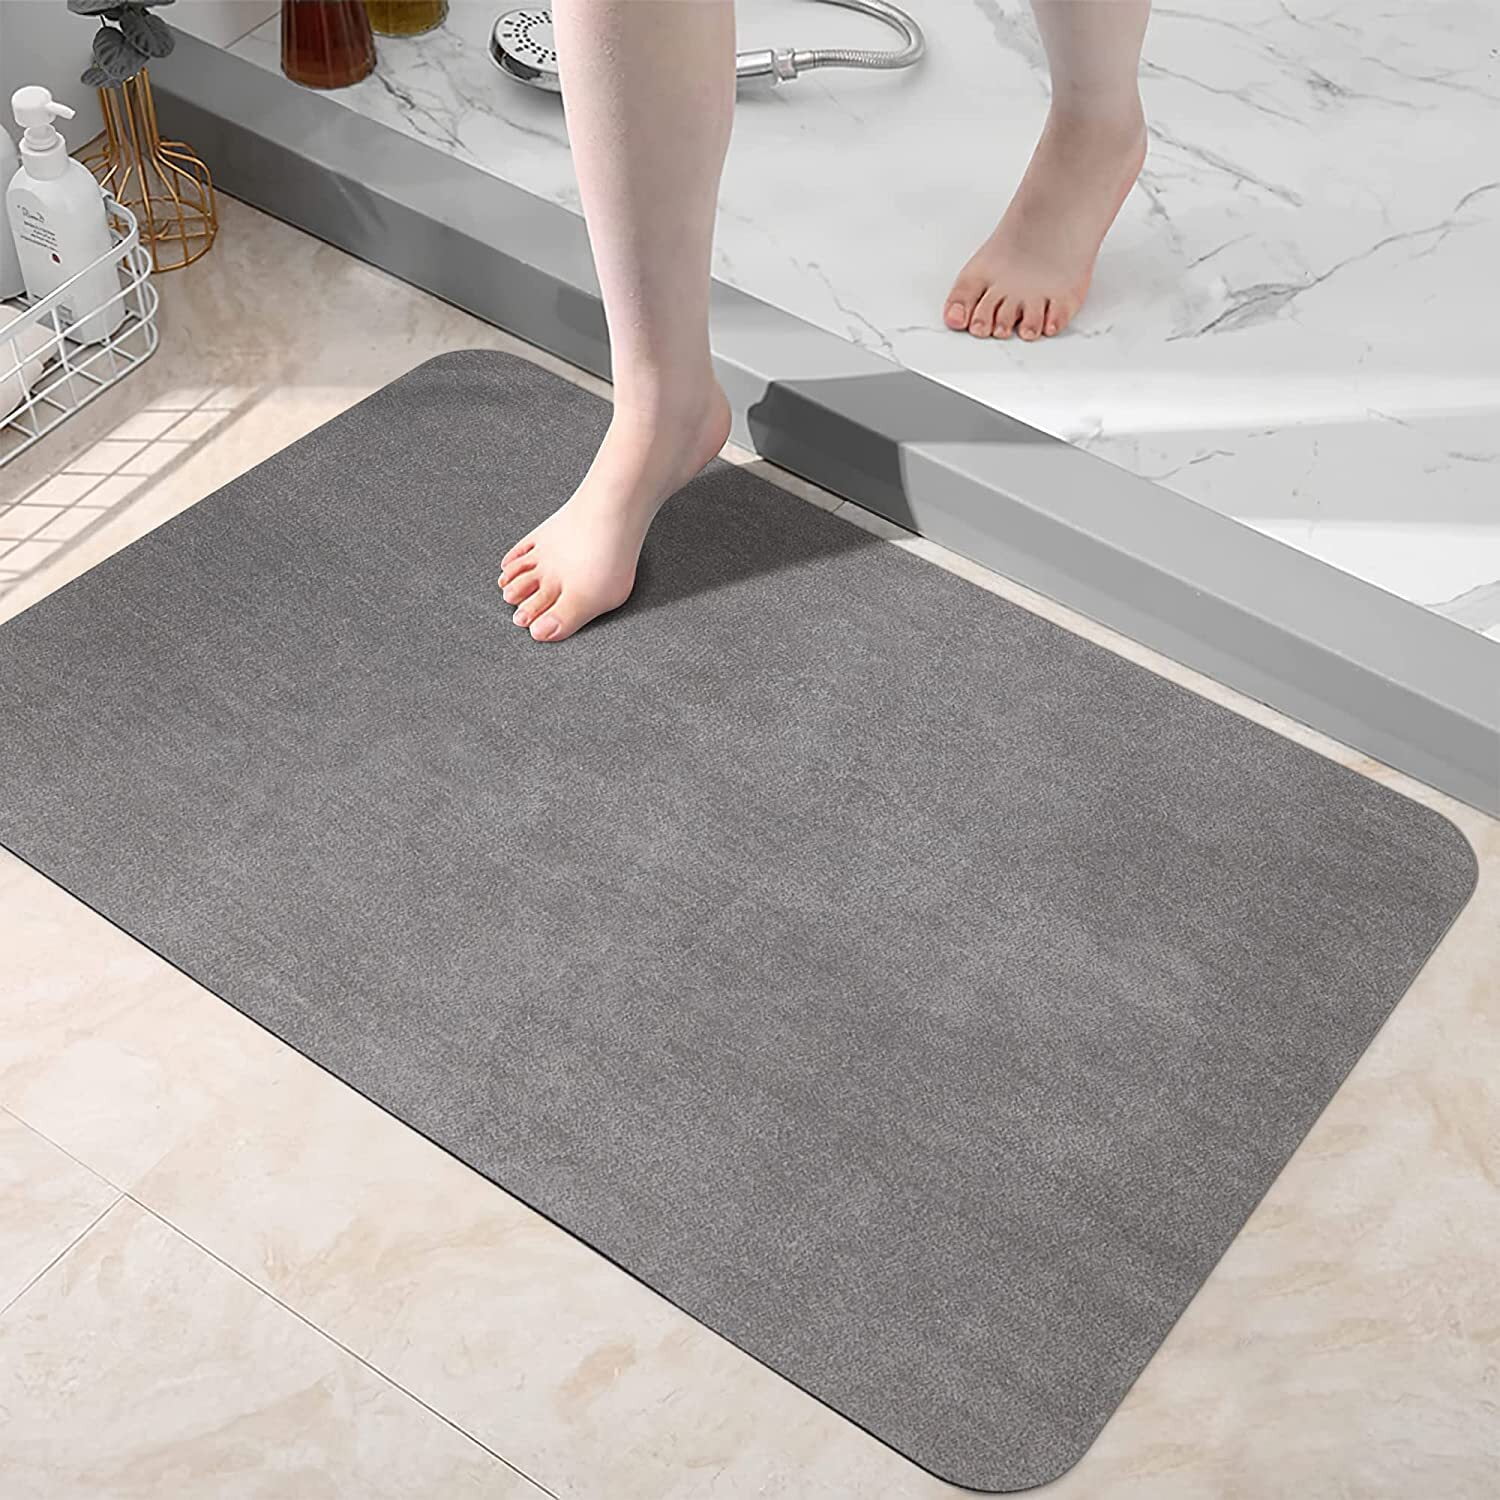 010 Non-Slip Mold Resistant Bamboo Floor Mat Bathroom Wood Stripe Floor  Doormat Bath Solid Wood Shower Mat